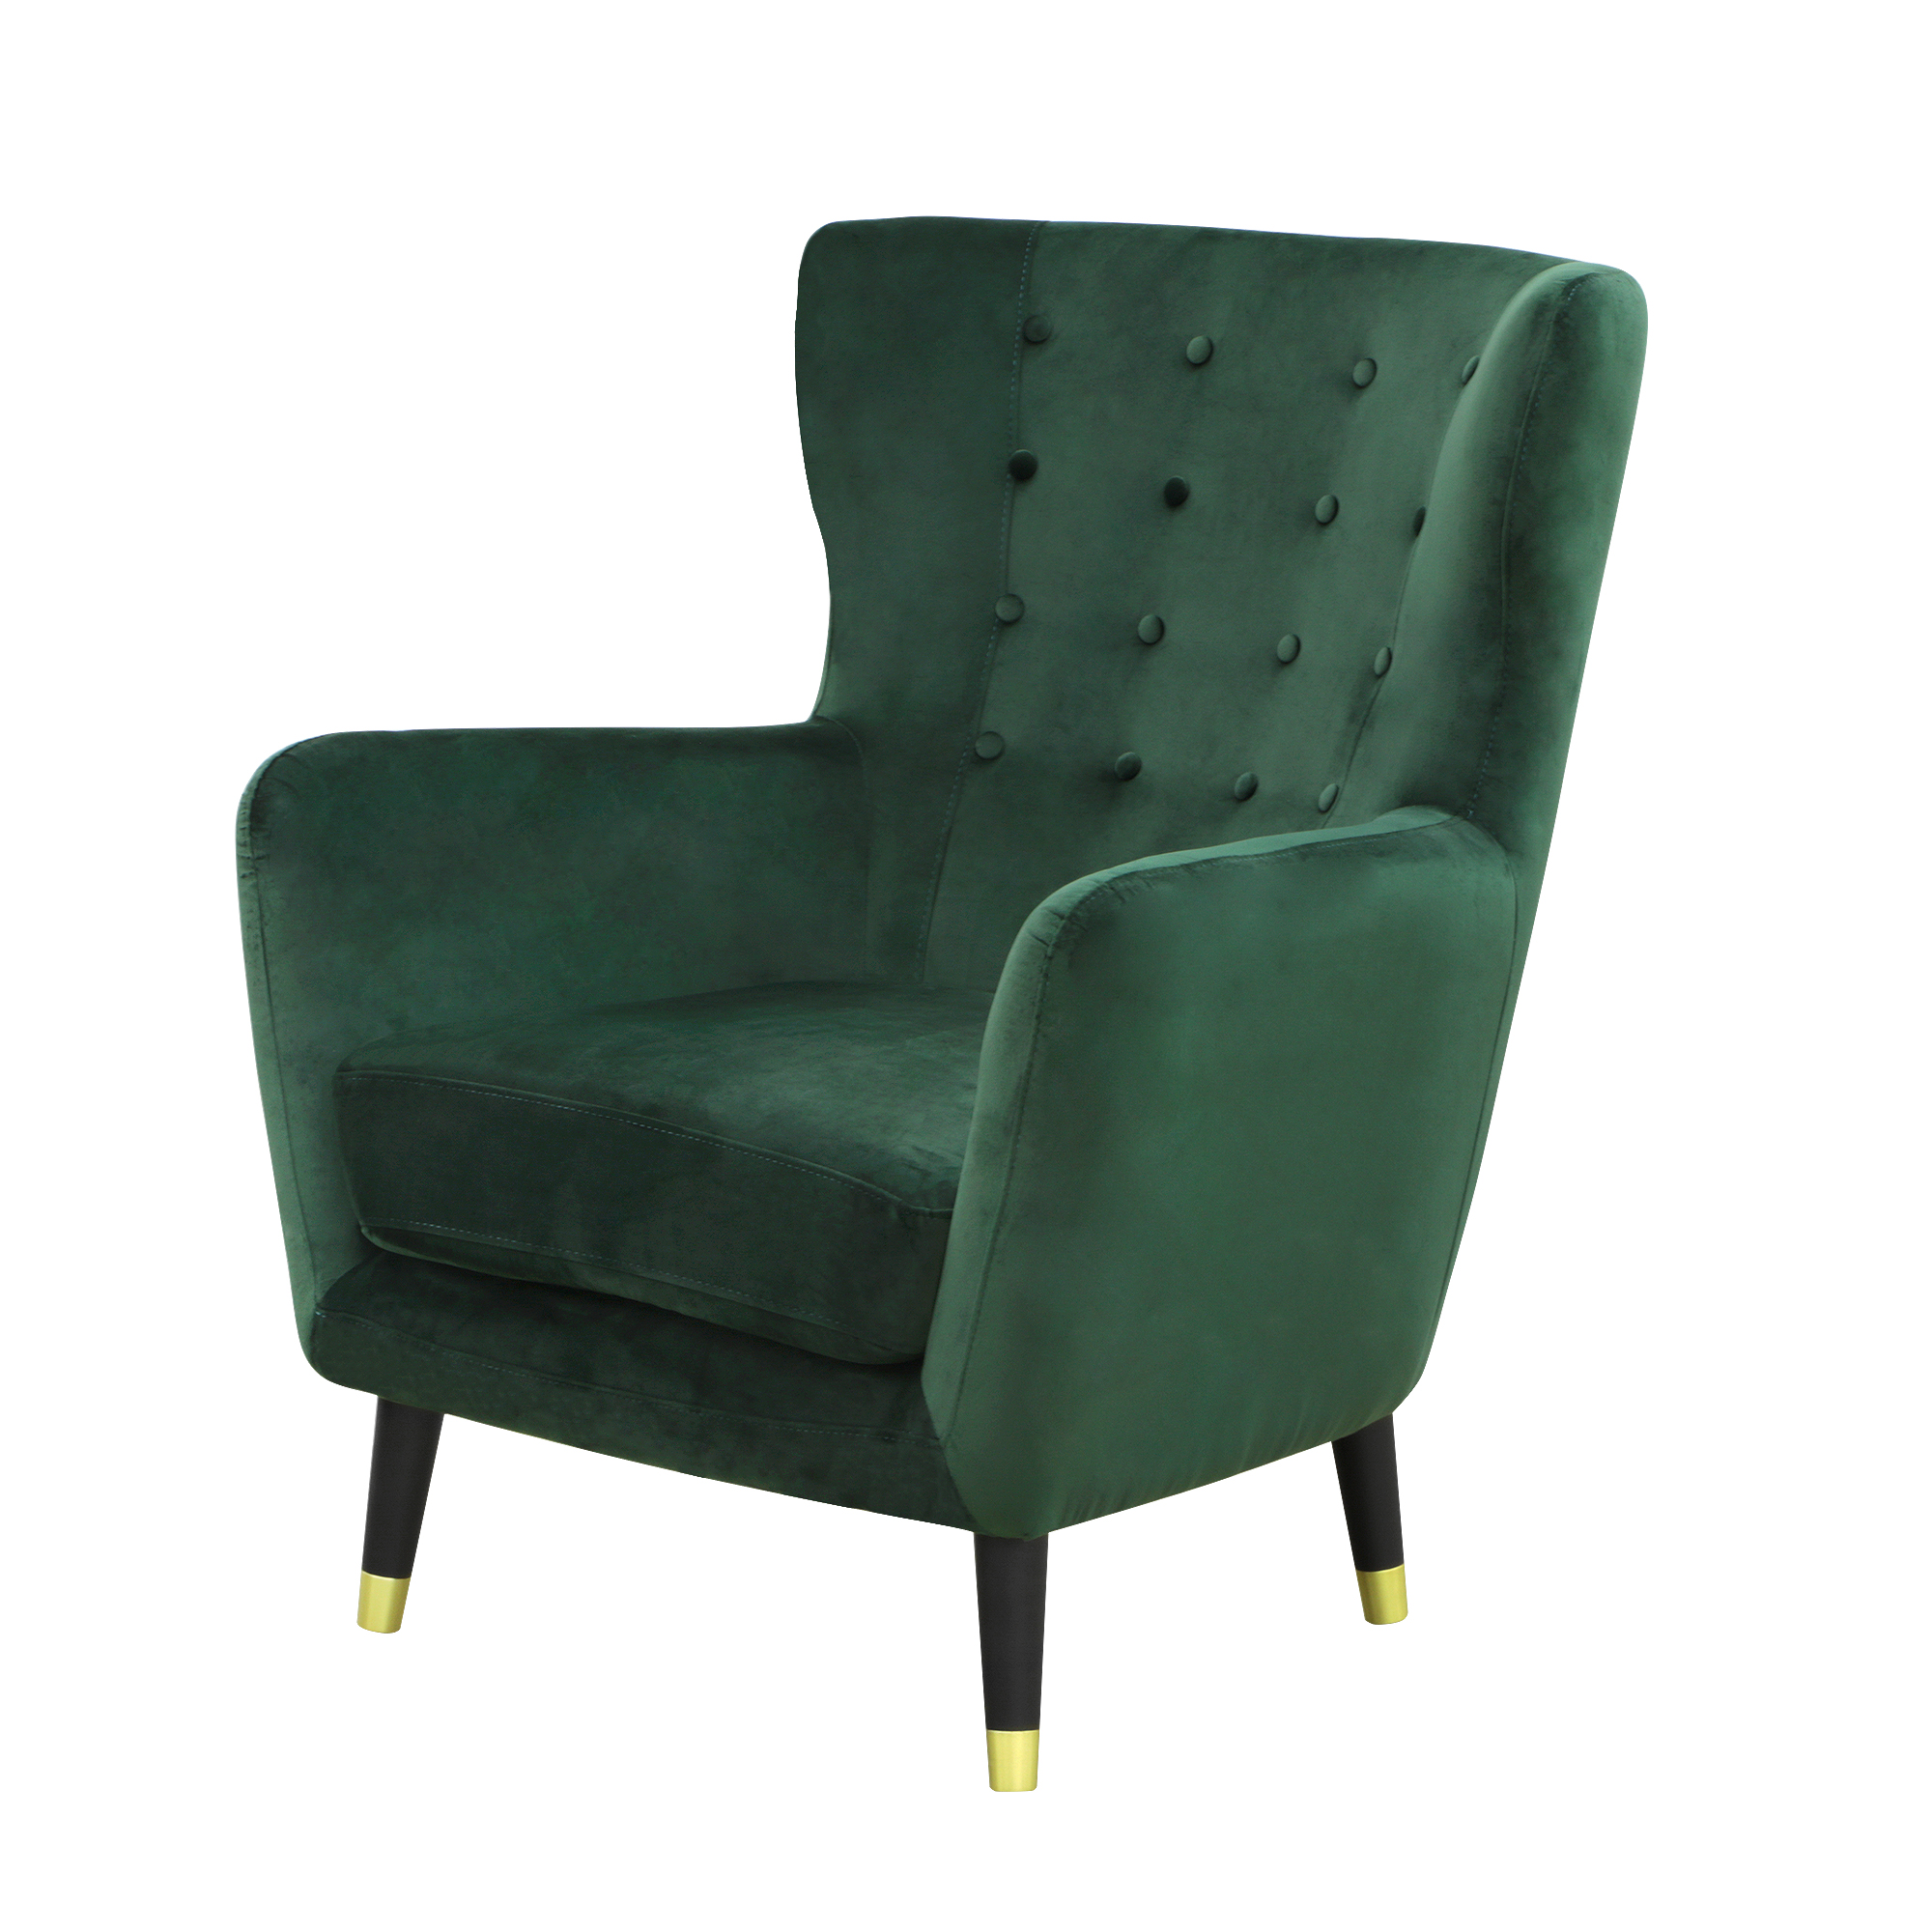 Кресло Liyasi элфи зеленое 80x81x93cm - фото 1